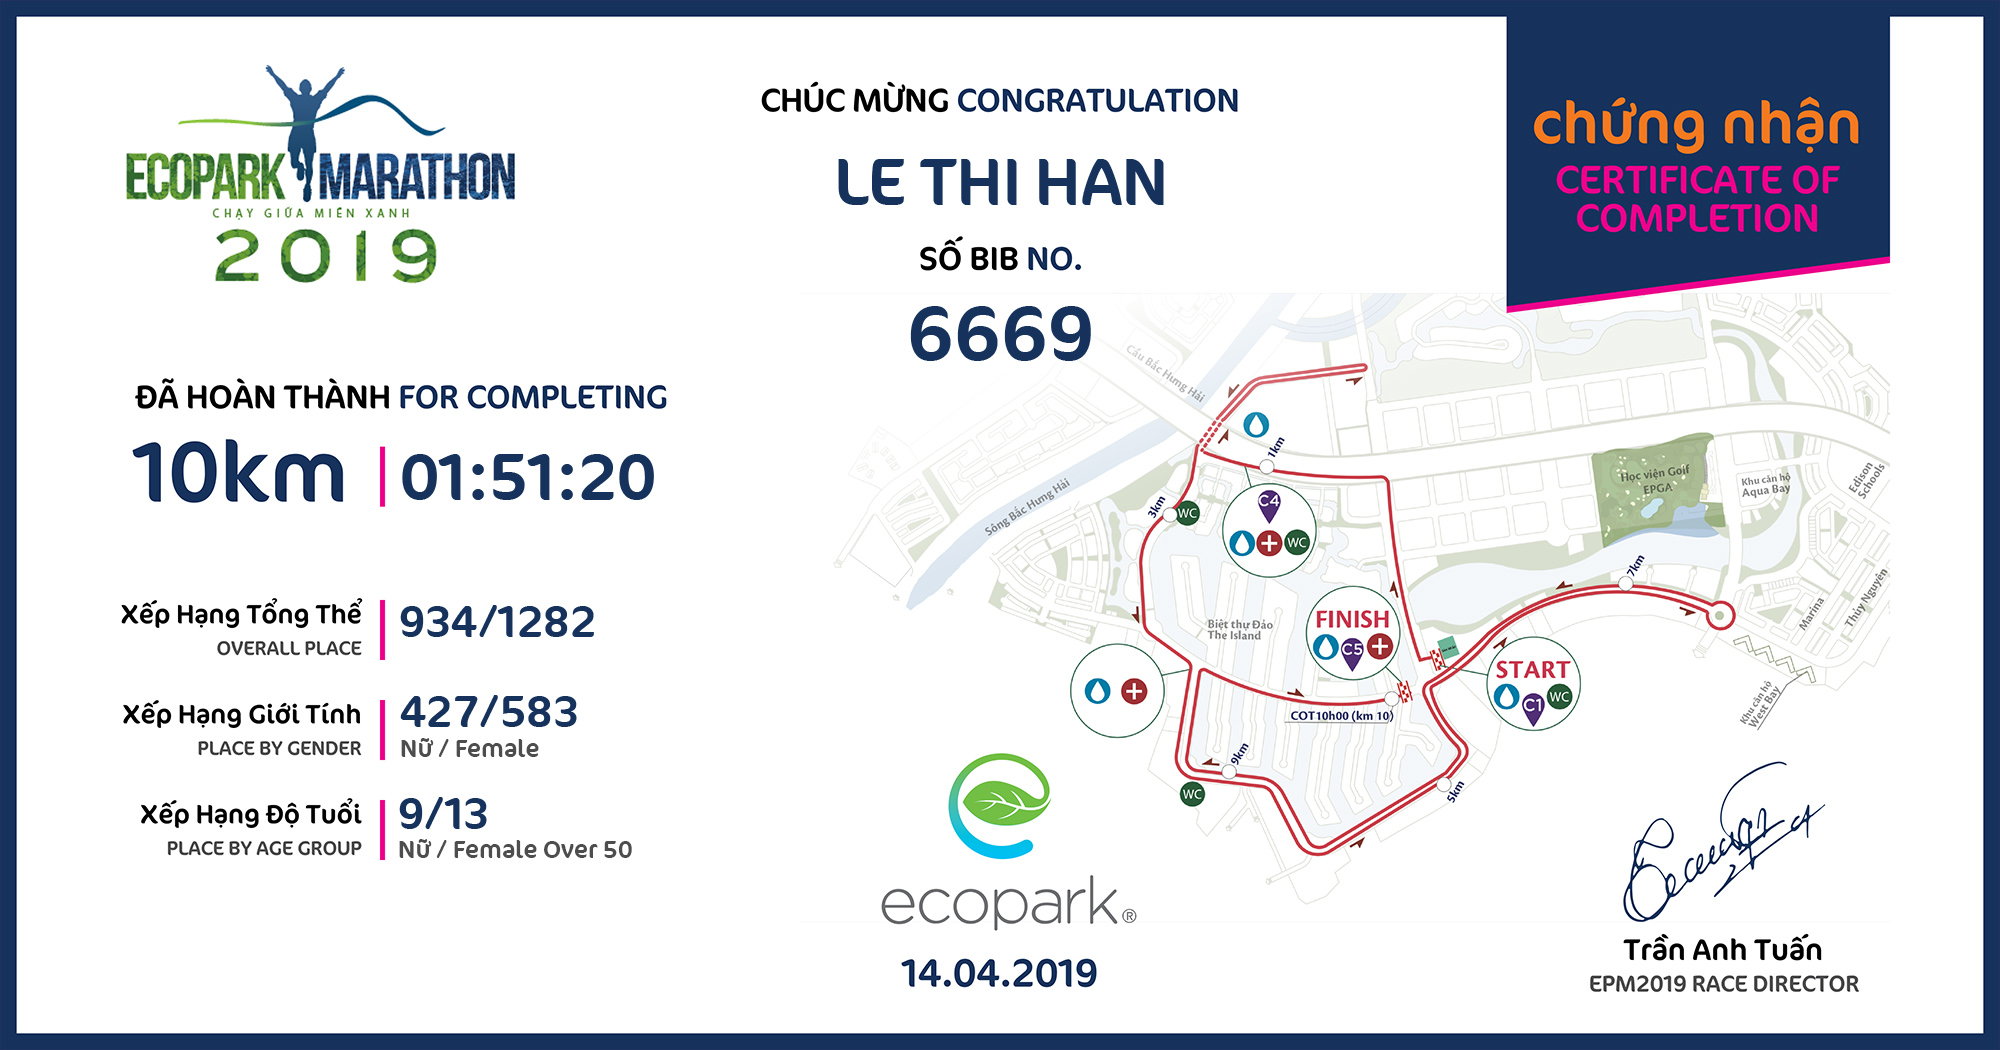 6669 - Le Thi Han